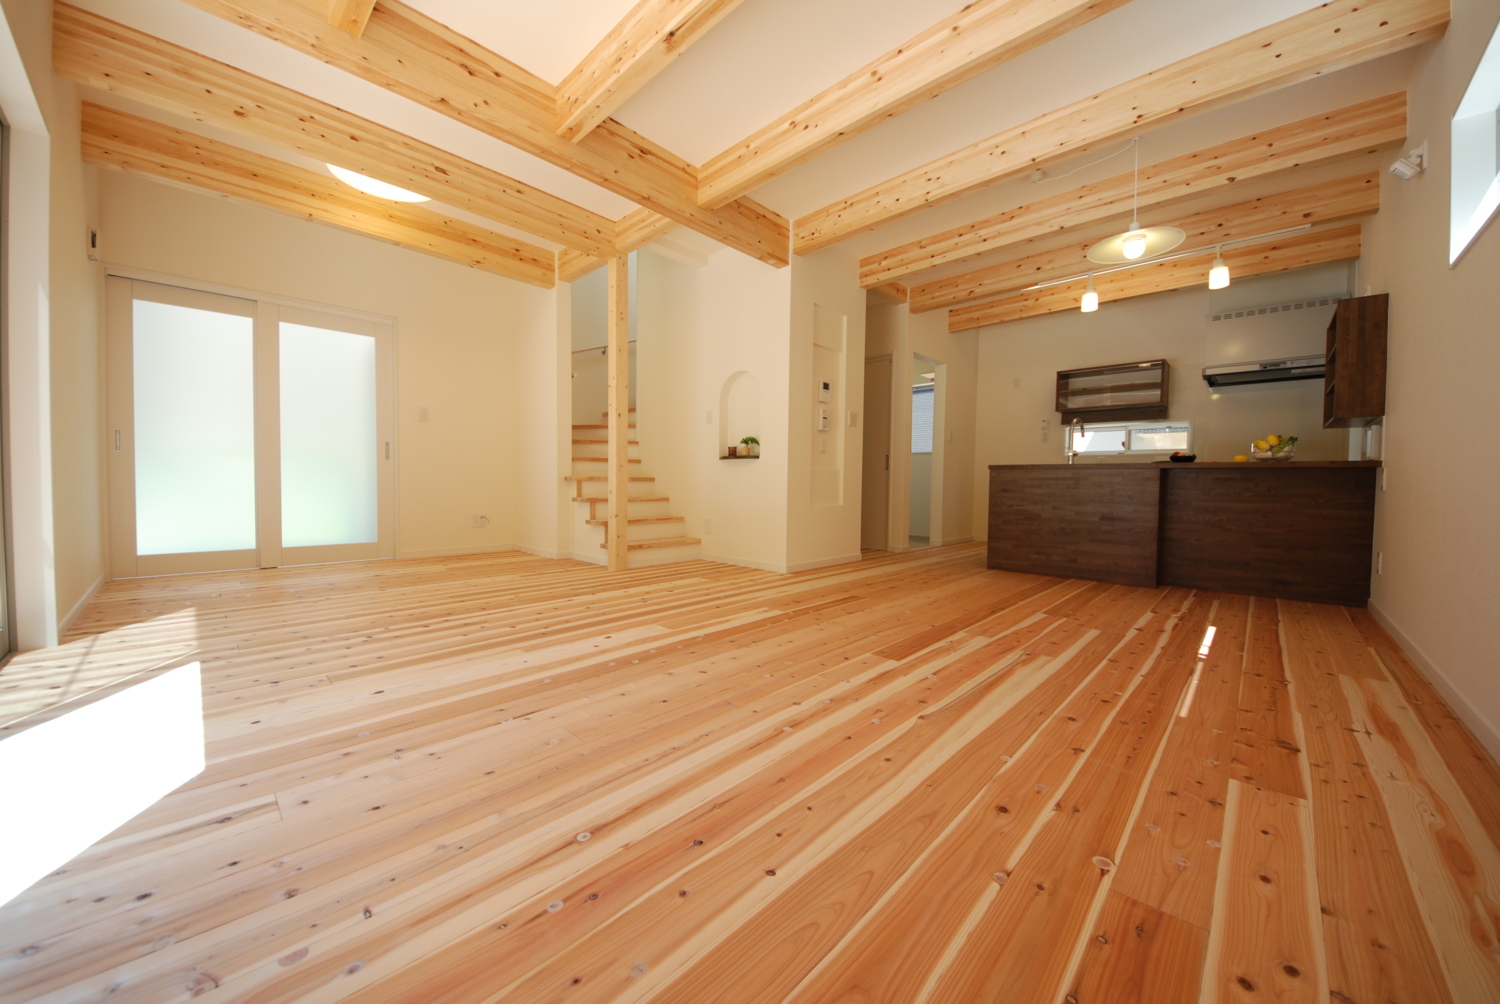 金属外壁と木の外観と室内は優しい杉板のお家。